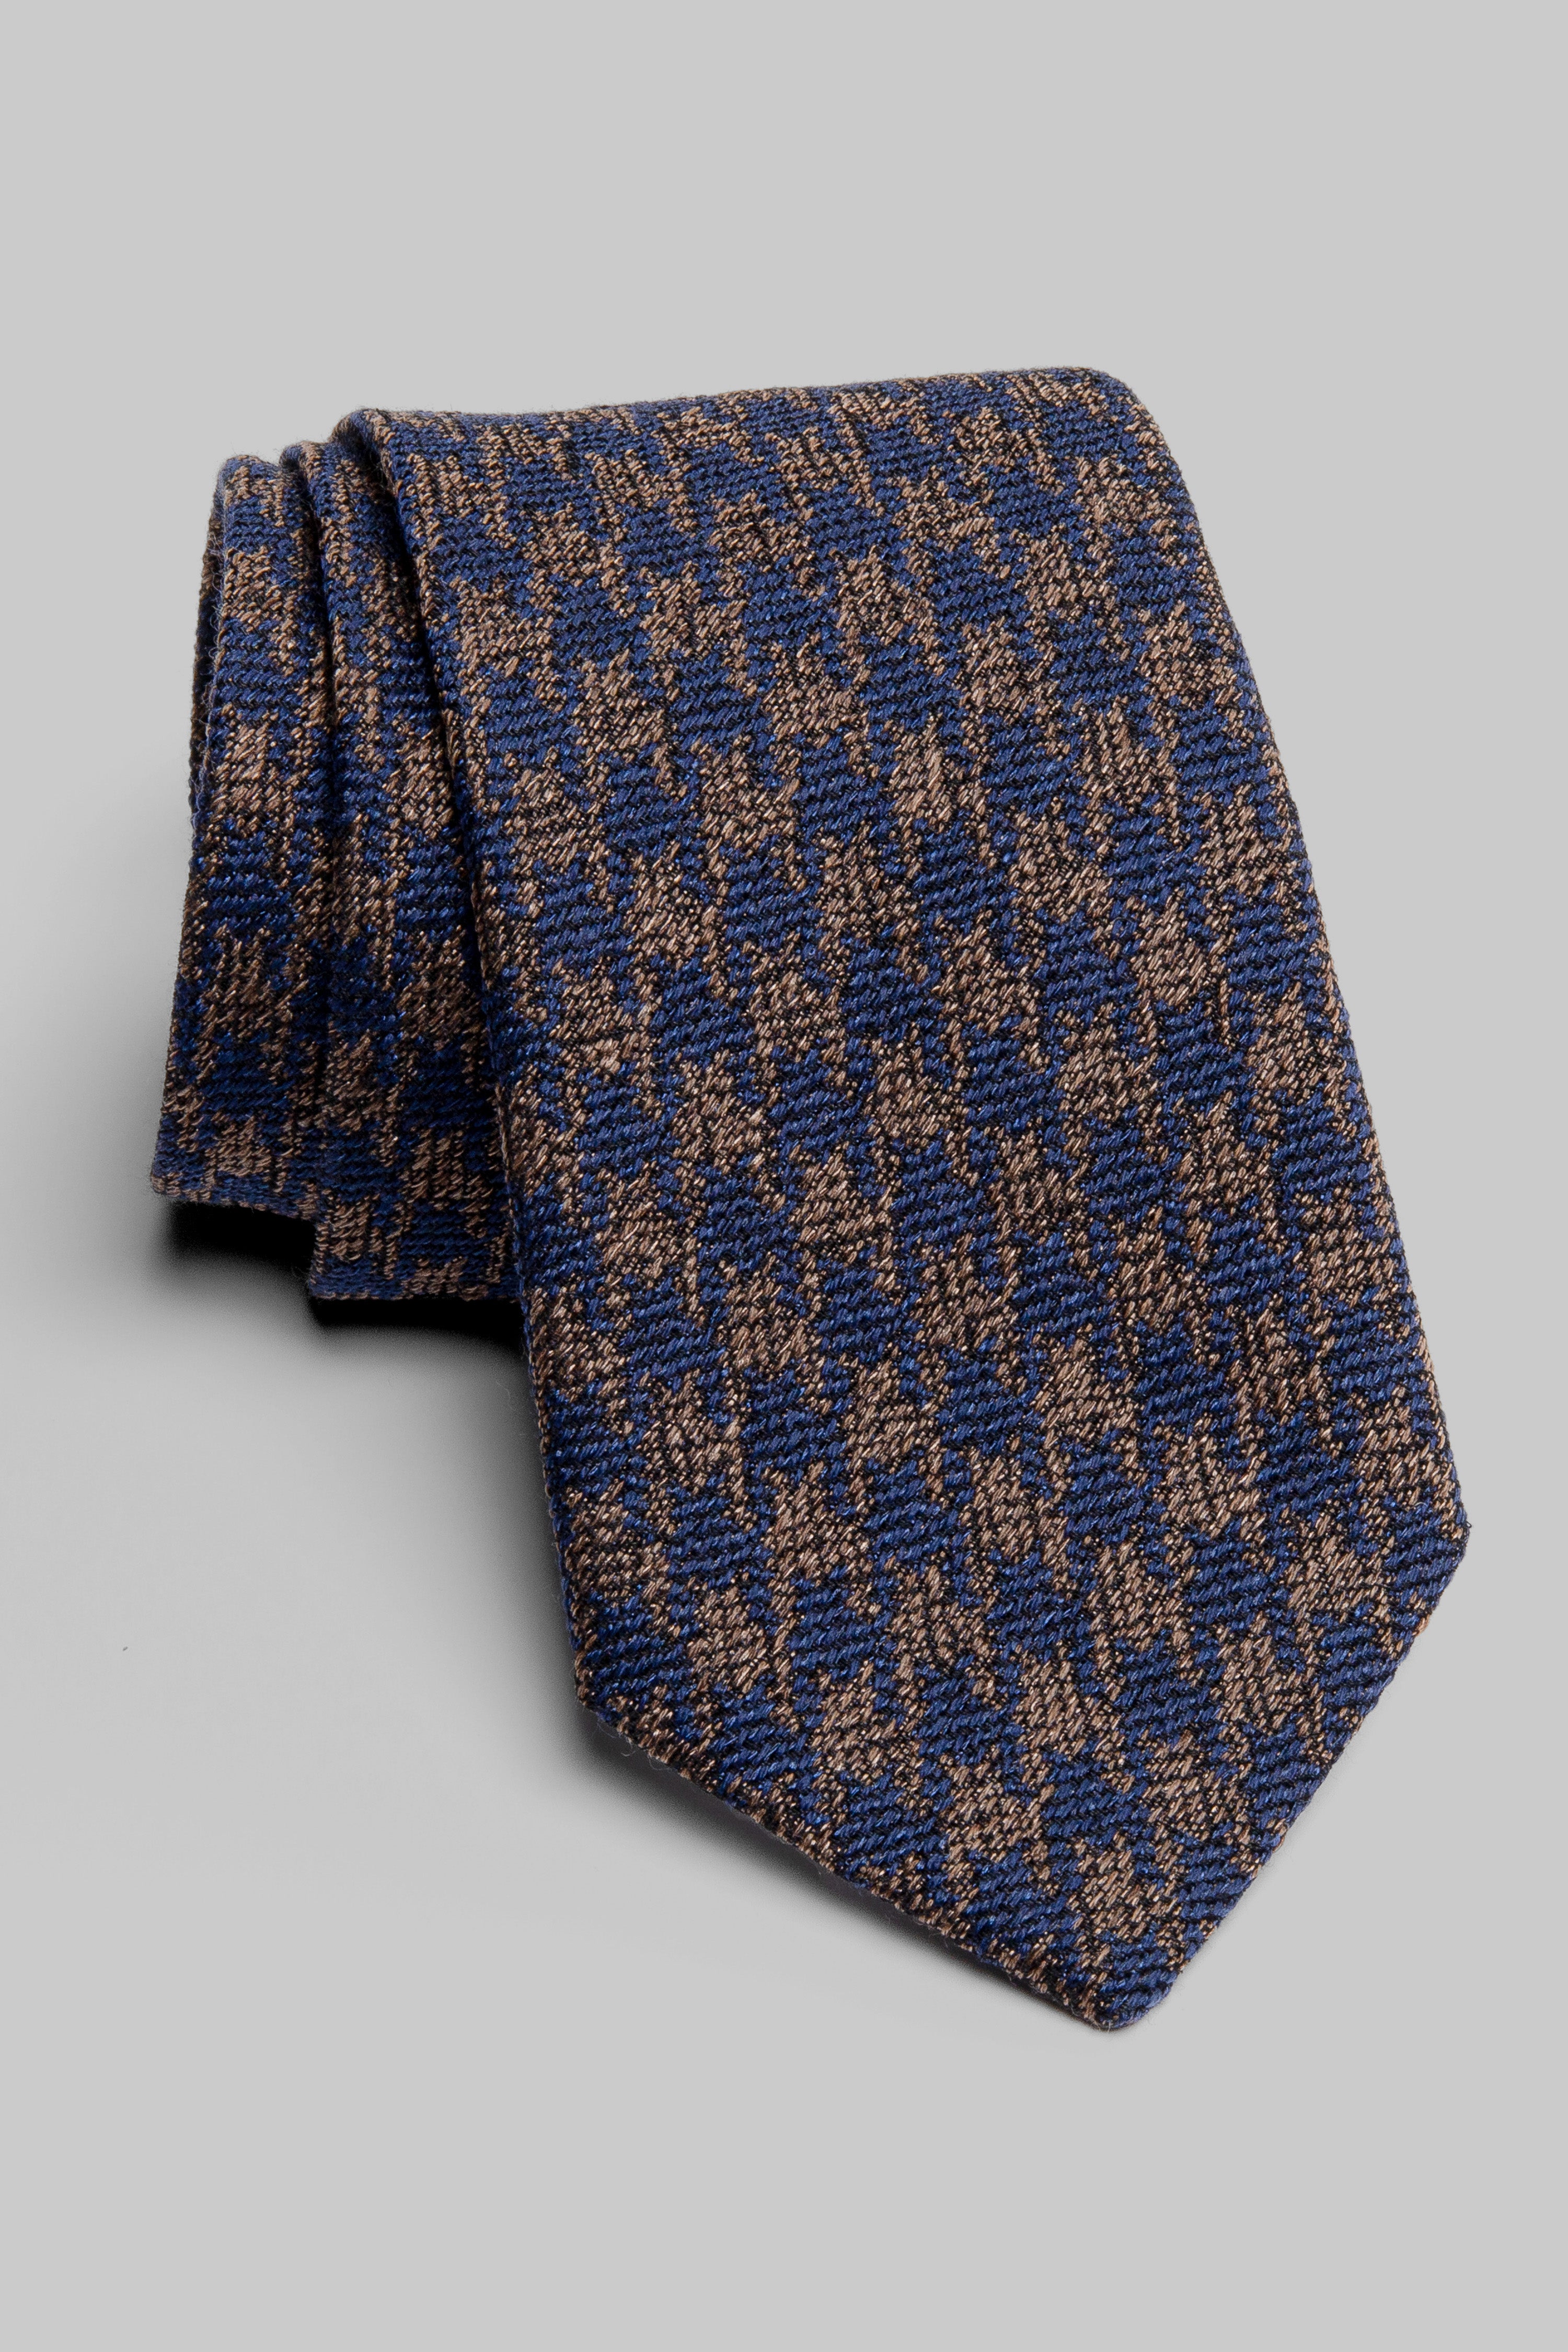 Vue alternative Cravate Noble Tissée Pied-de-Poule Marron